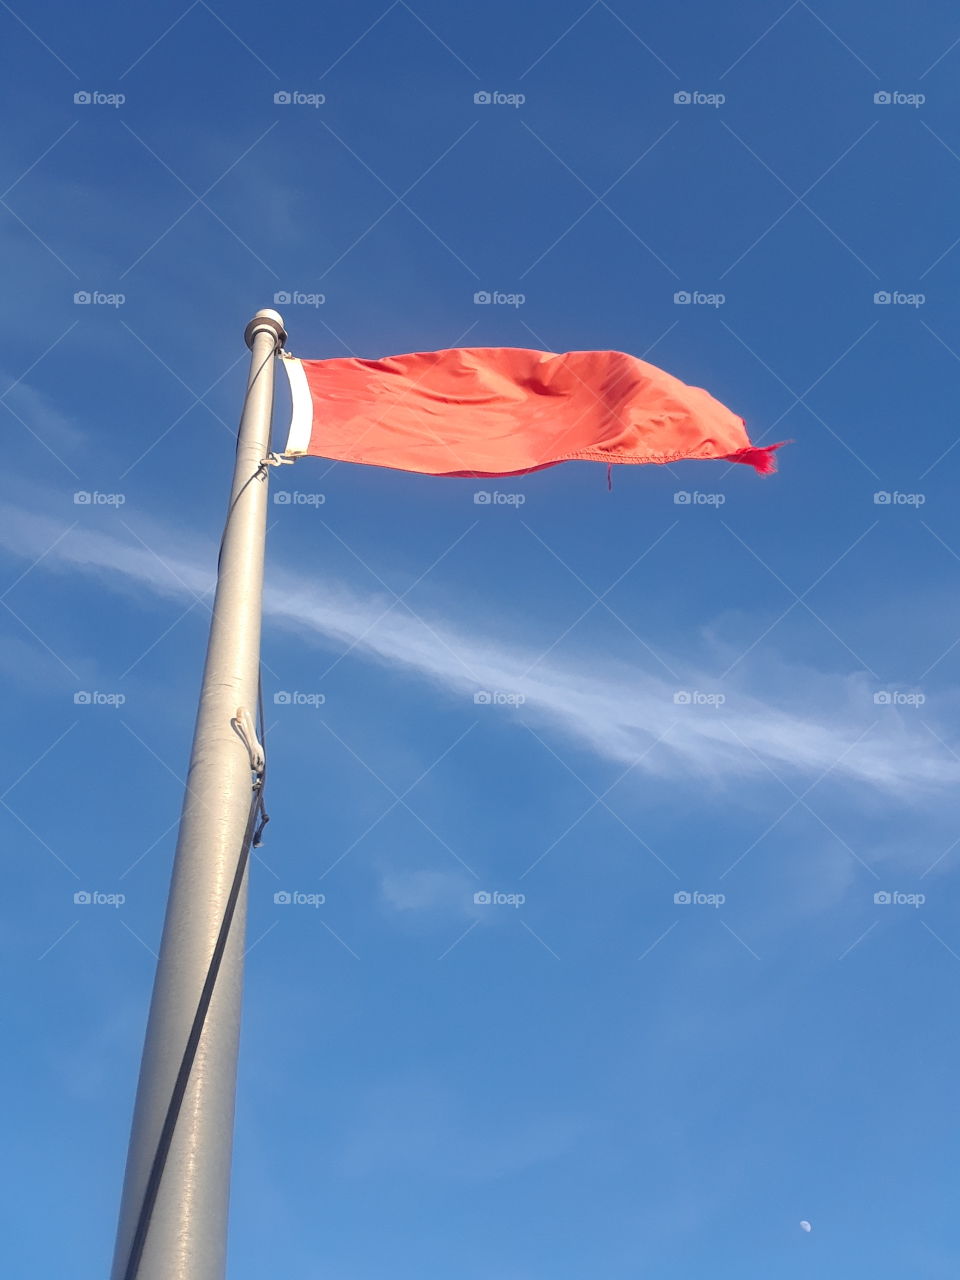 Red Warning Flag at Daytona Beach,Florida